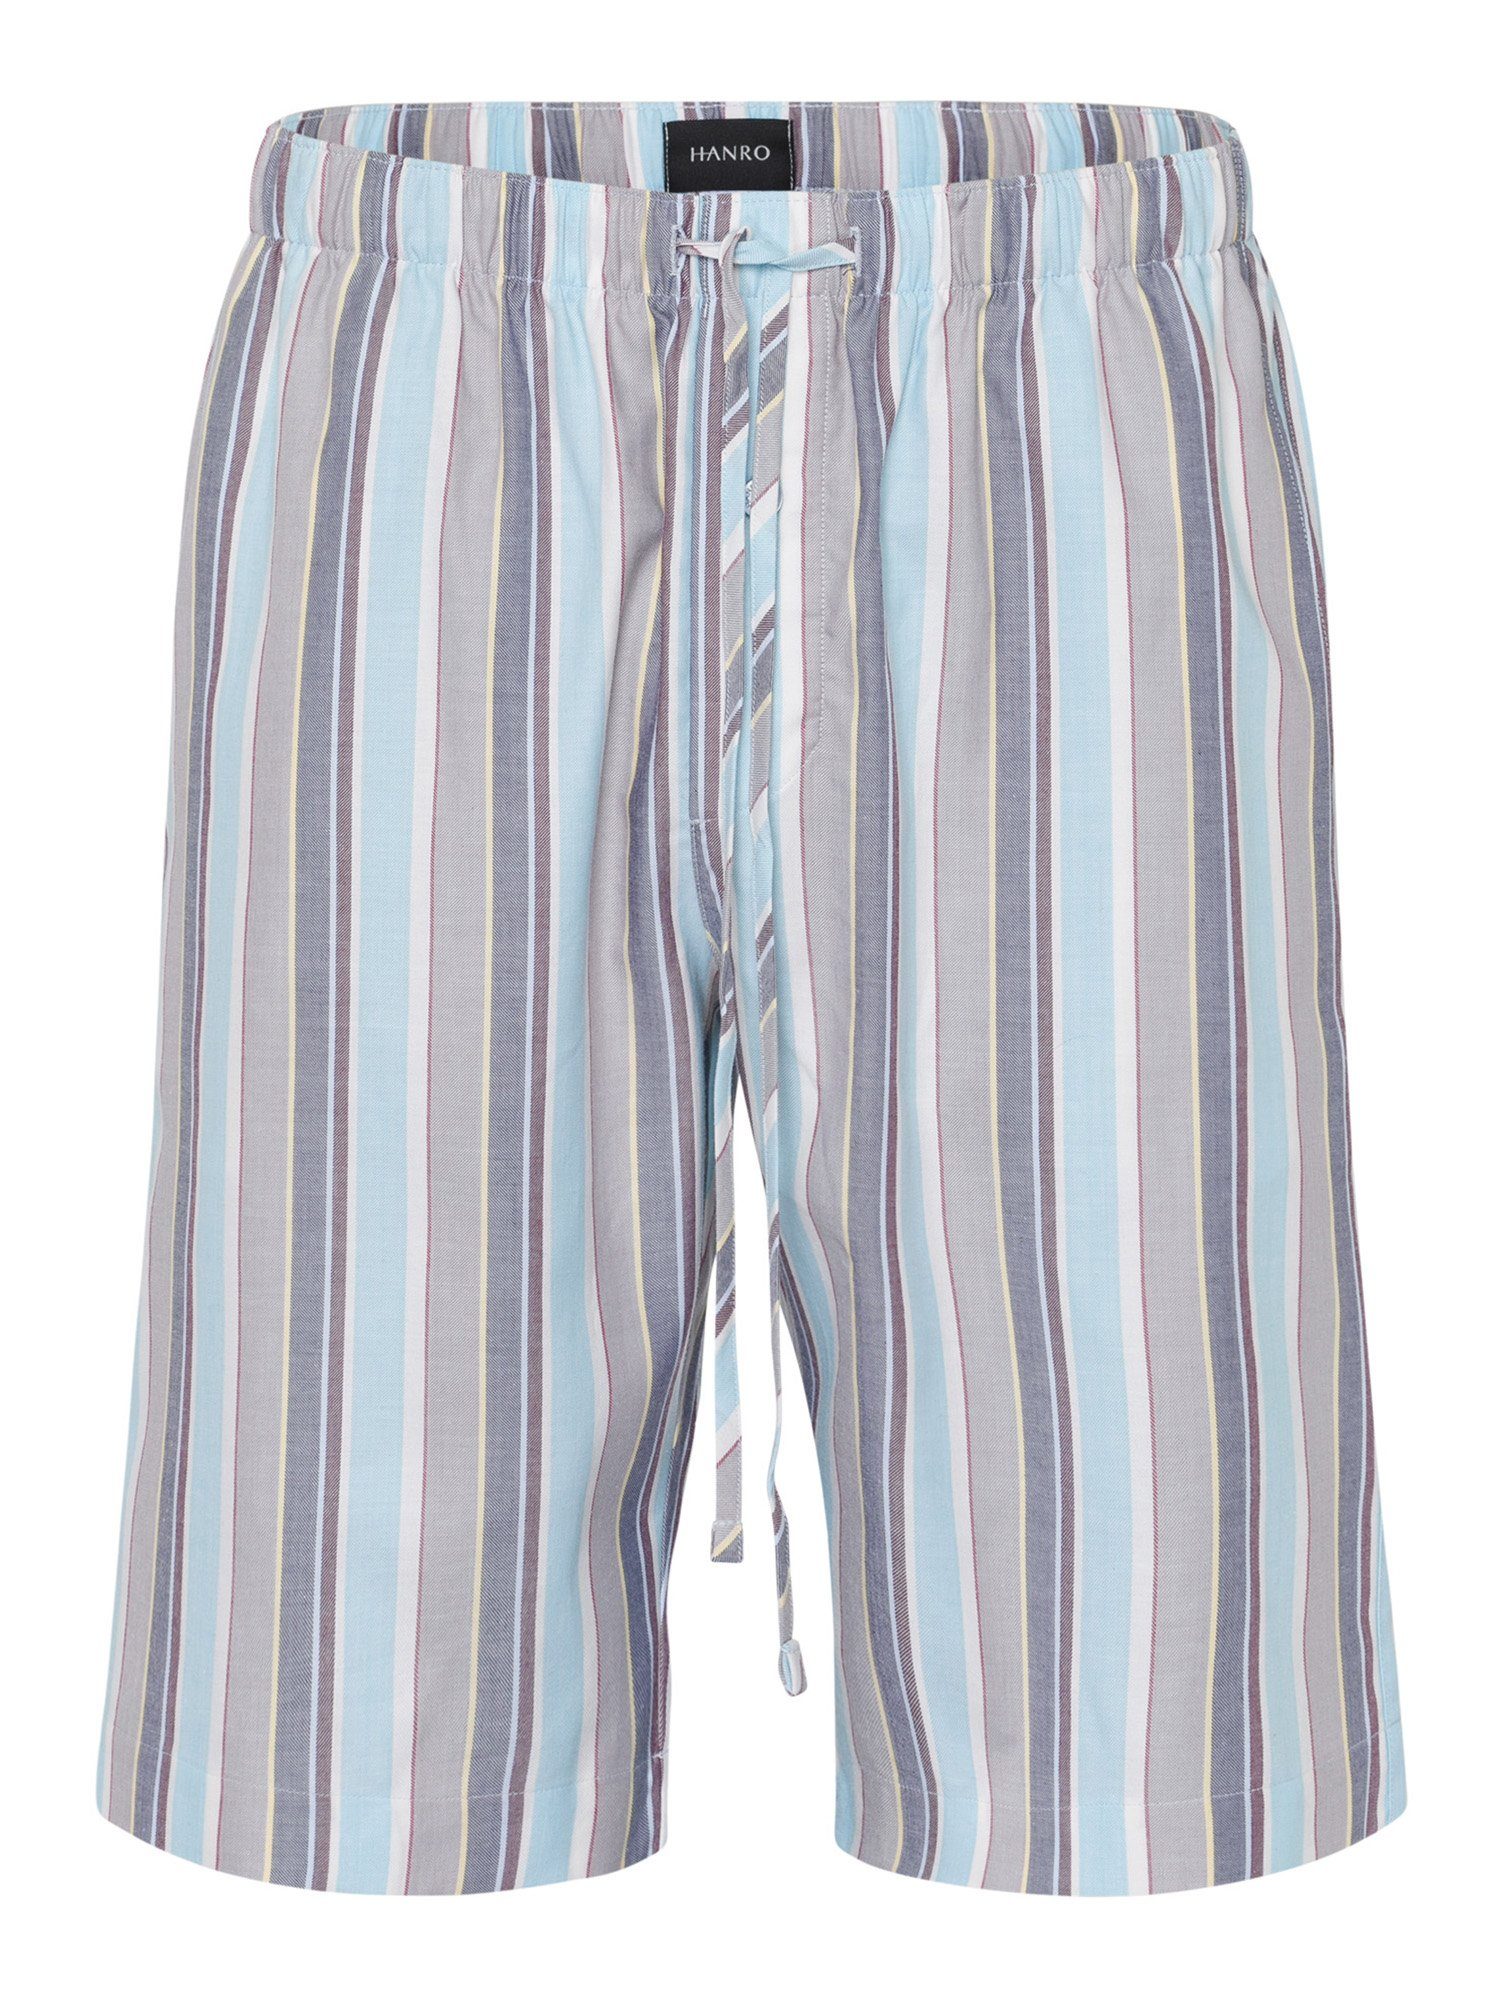 Hanro Pyjamashorts Night & Day jaunty stripe